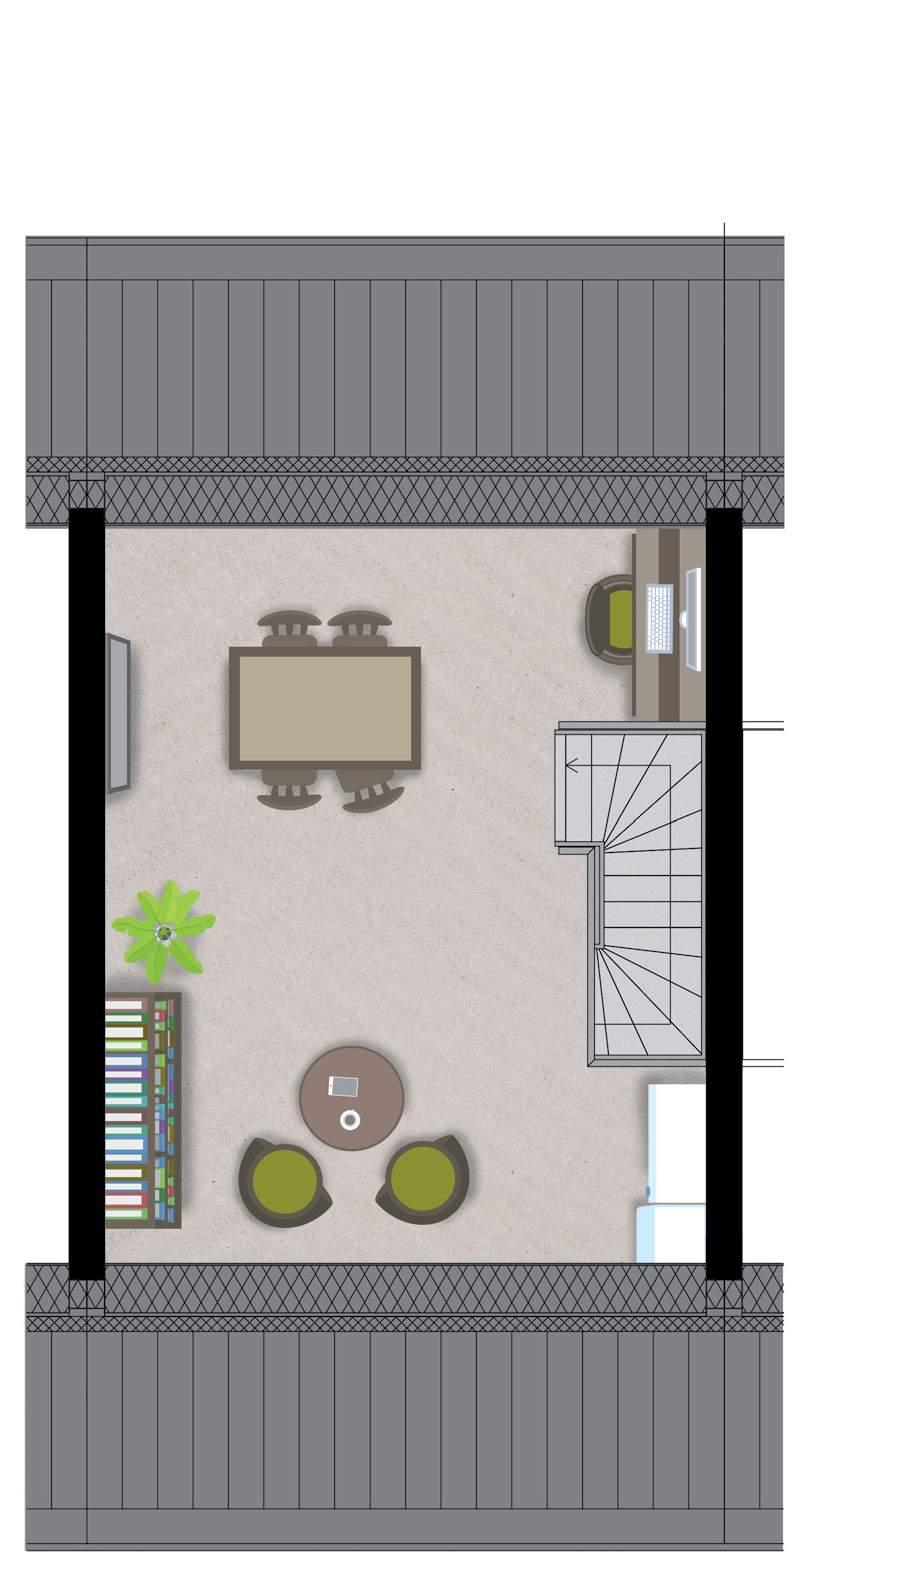 Eerste verdieping Zolder < 2306 > < 3186 > Optie: een dakraam of dakkapel maken de